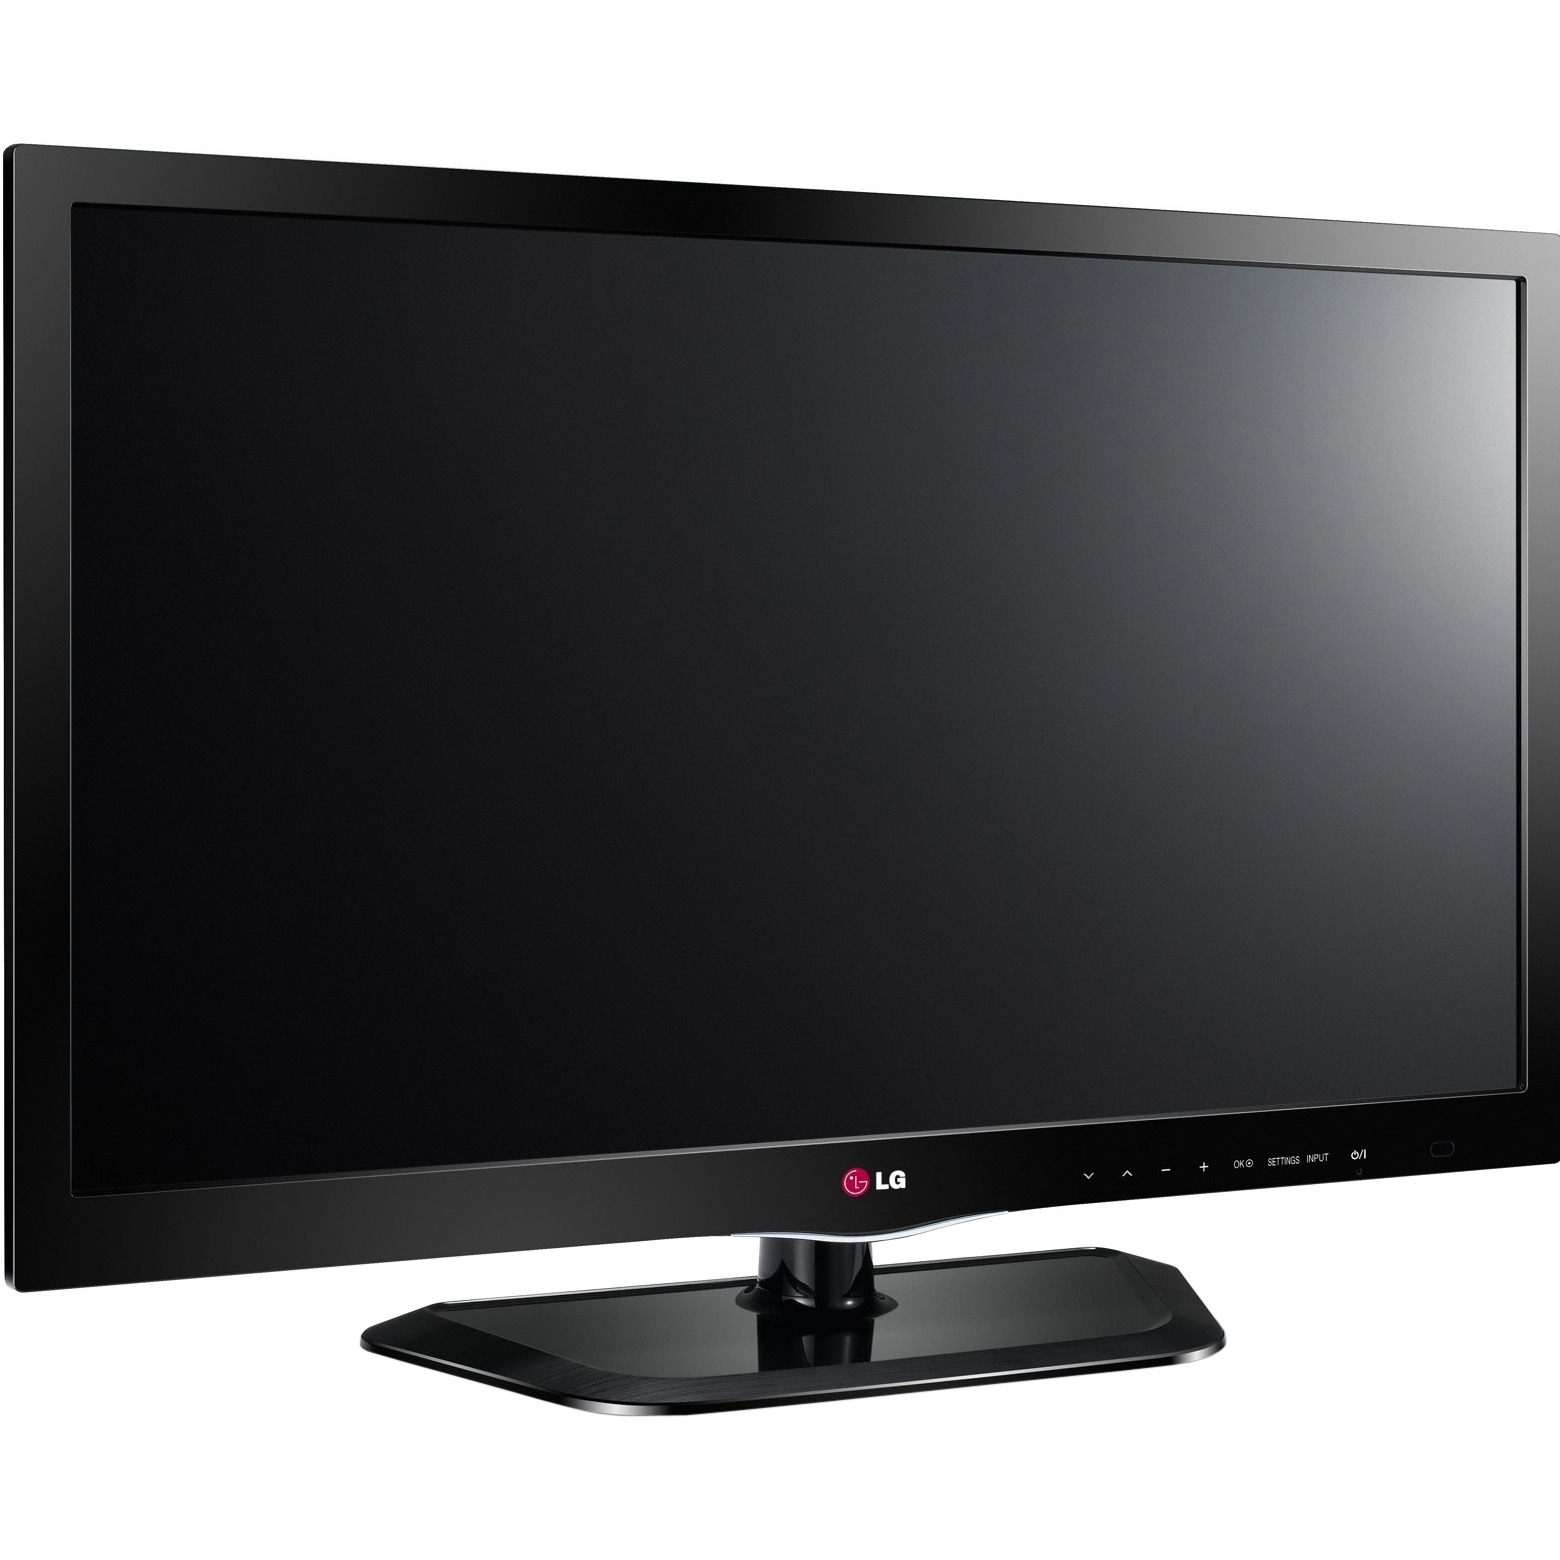 Последняя версия телевизора lg. Телевизор LG 29ln450u. Телевизор LG 29ln450u led. 22" Телевизор LG 22ln450u led. Телевизор LG 42pn450d.